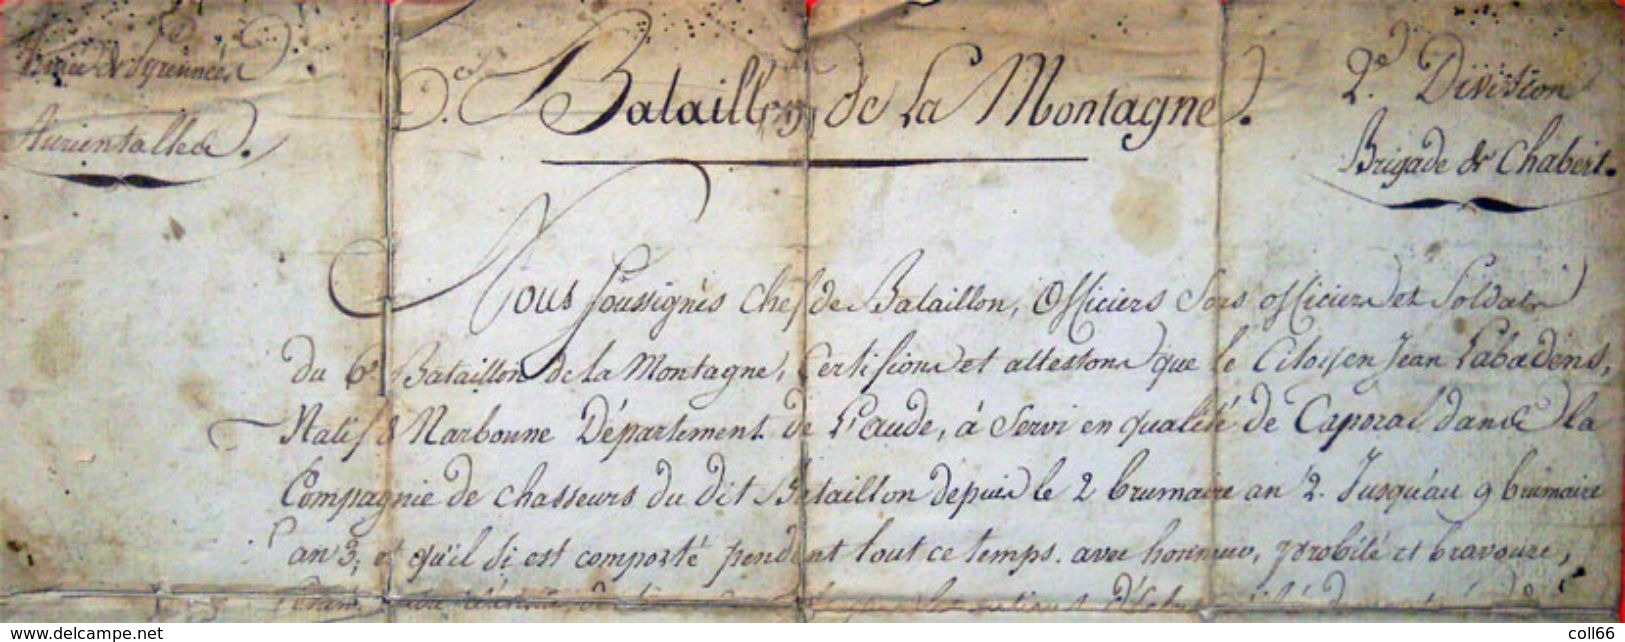 1793-4 Armée Des Pyrénées Orientales Bataillon De Montagne Catalunya Révolution Caporal Prise Fort Bellegarde Le Perthus - Documents Historiques